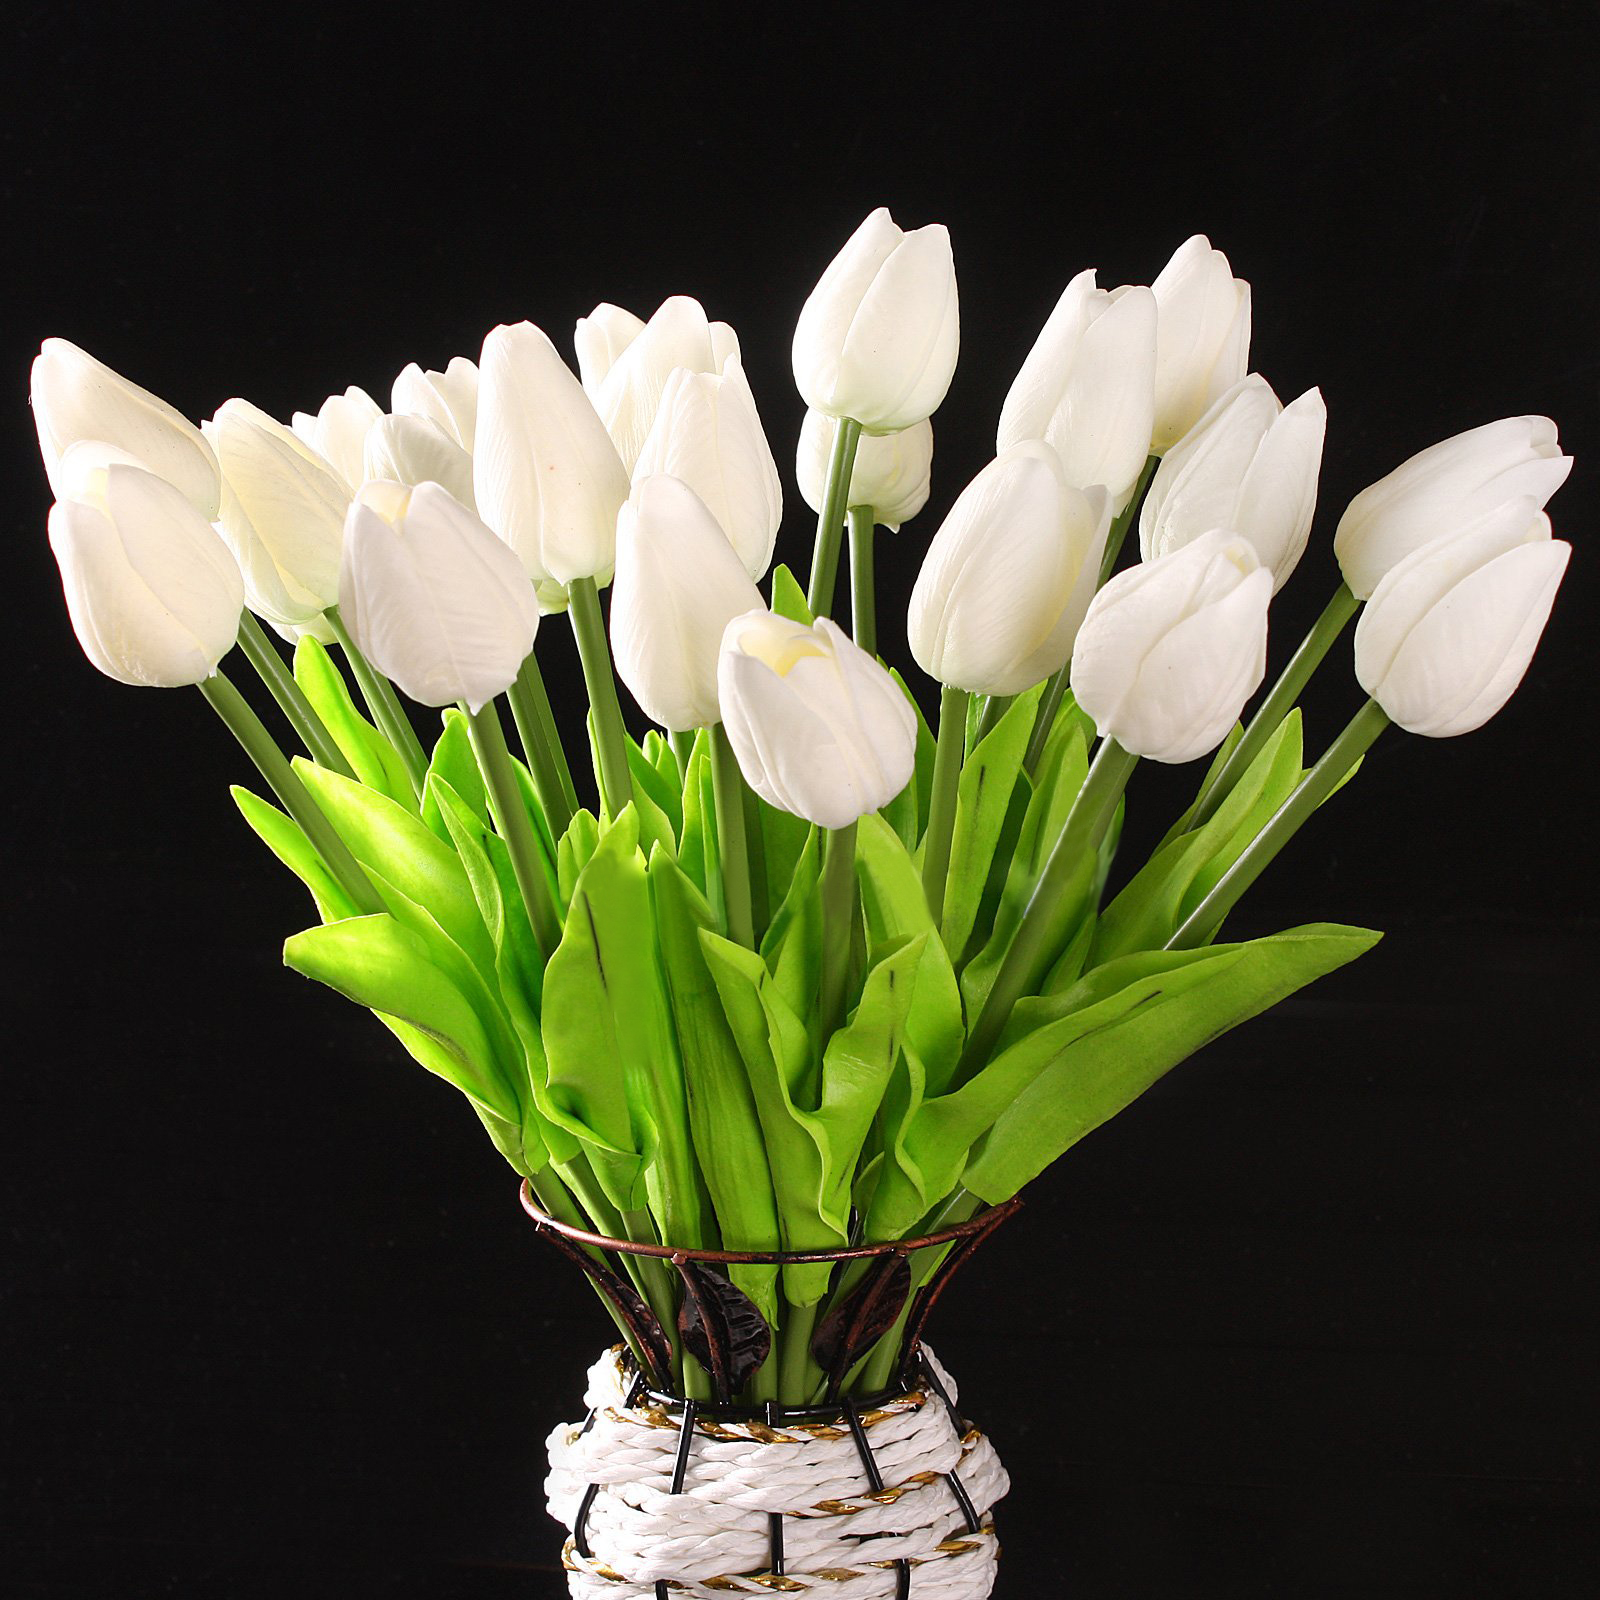 Boutique 10 pcs White Tulip Flower Latex For Wedding Bouquet KC456 ...